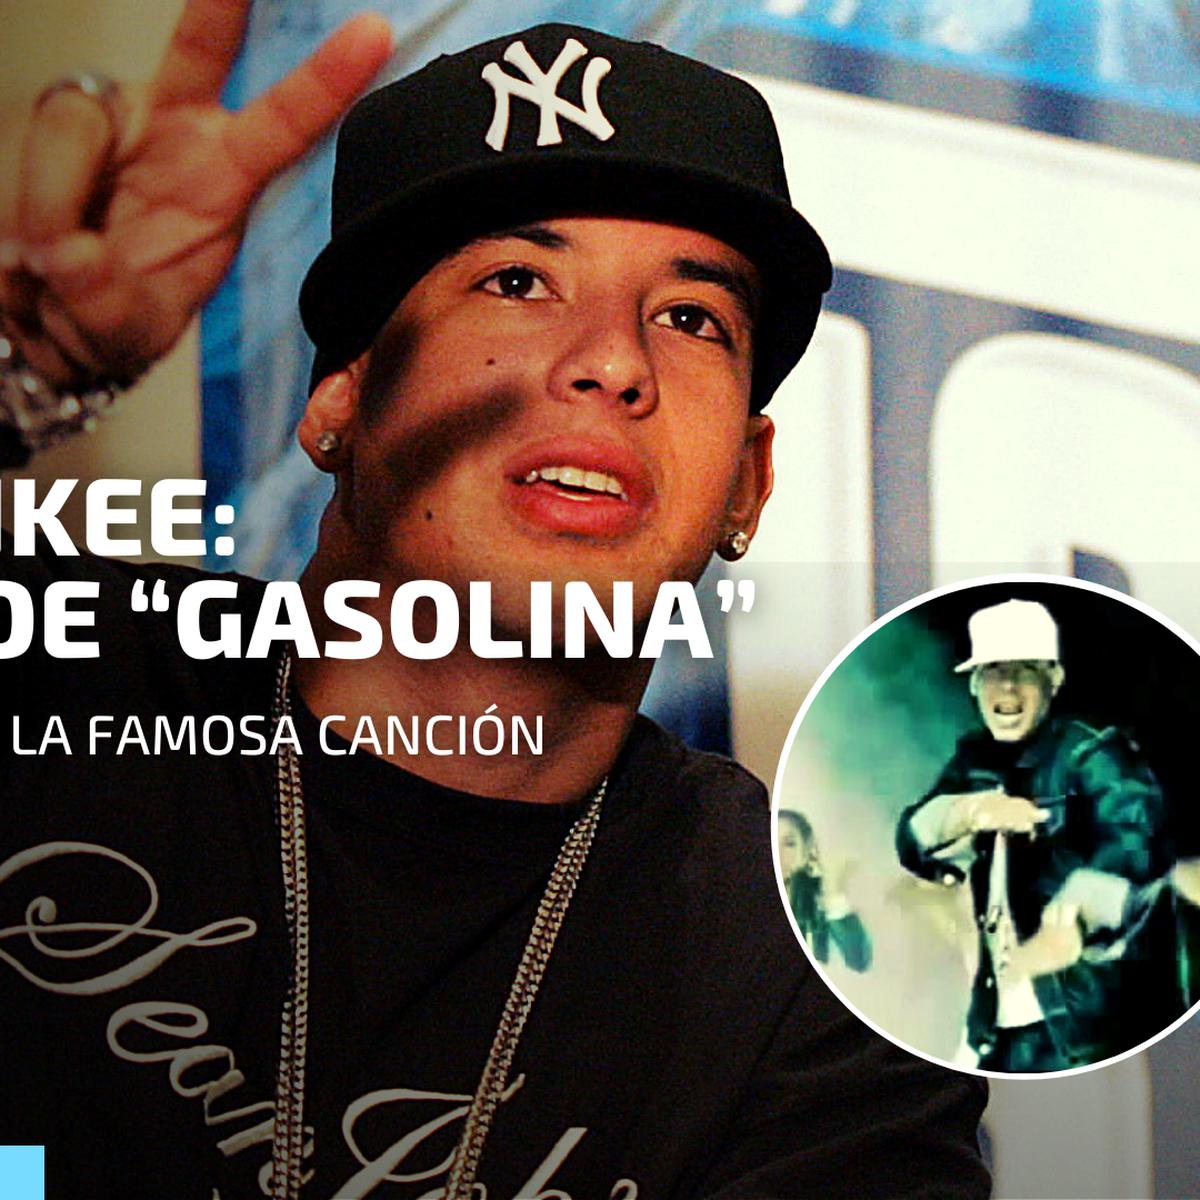 IMPERIO URBANO - Increíble que ahora Daddy Yankee se vea